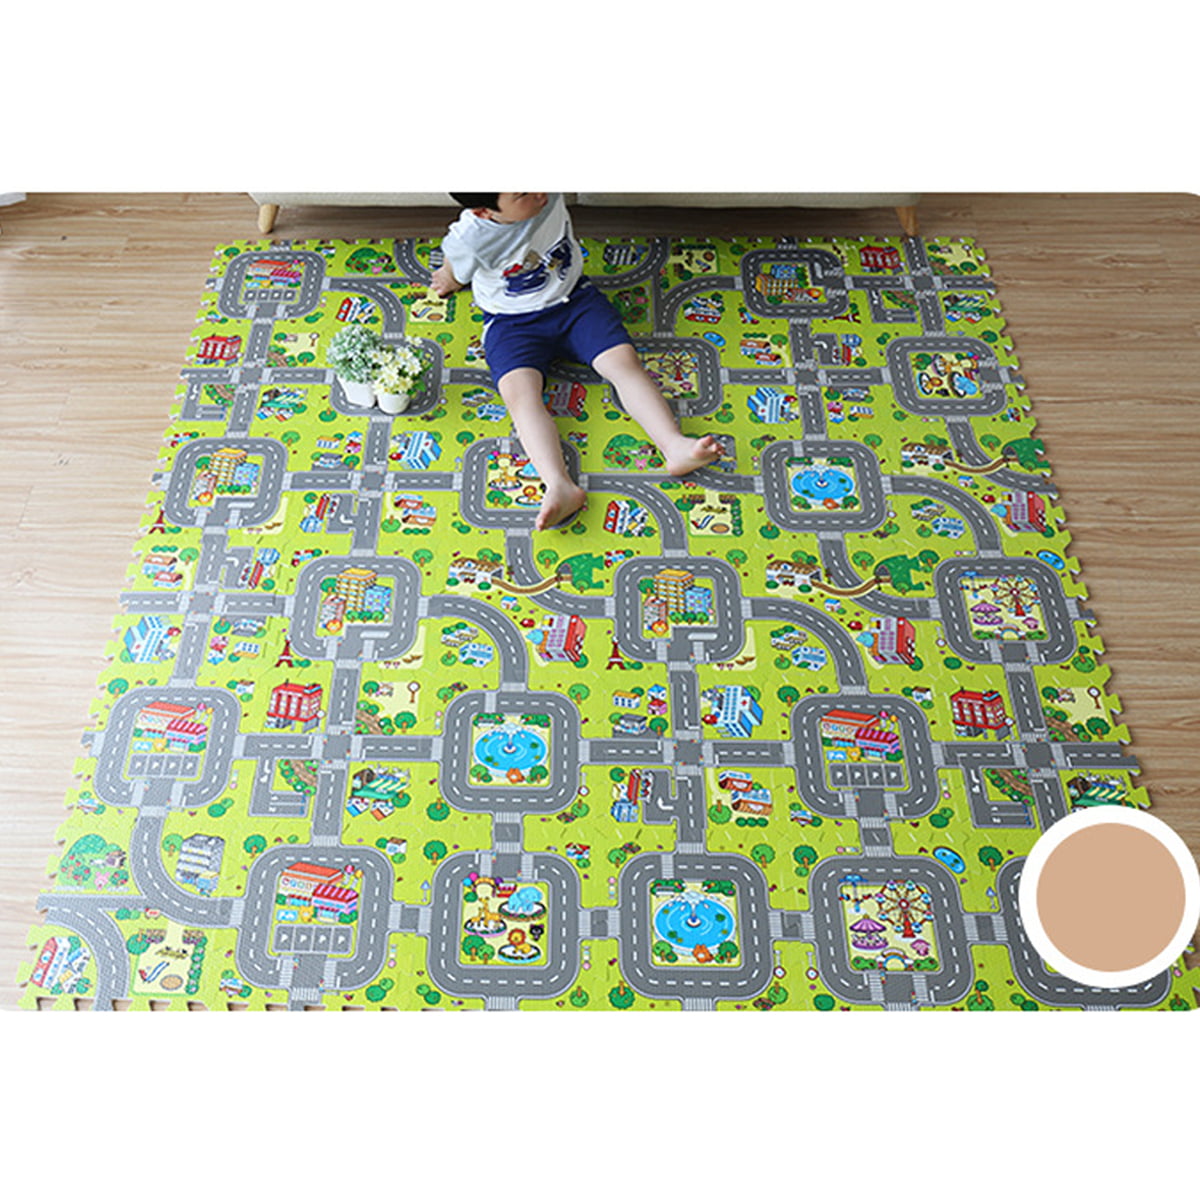 T-REASURE Soft Puzzle Mats,Splicing Velvet EVA Foam Kids Play Mat Set Floor Mat Crawling Mat for Home Bedroom Shop